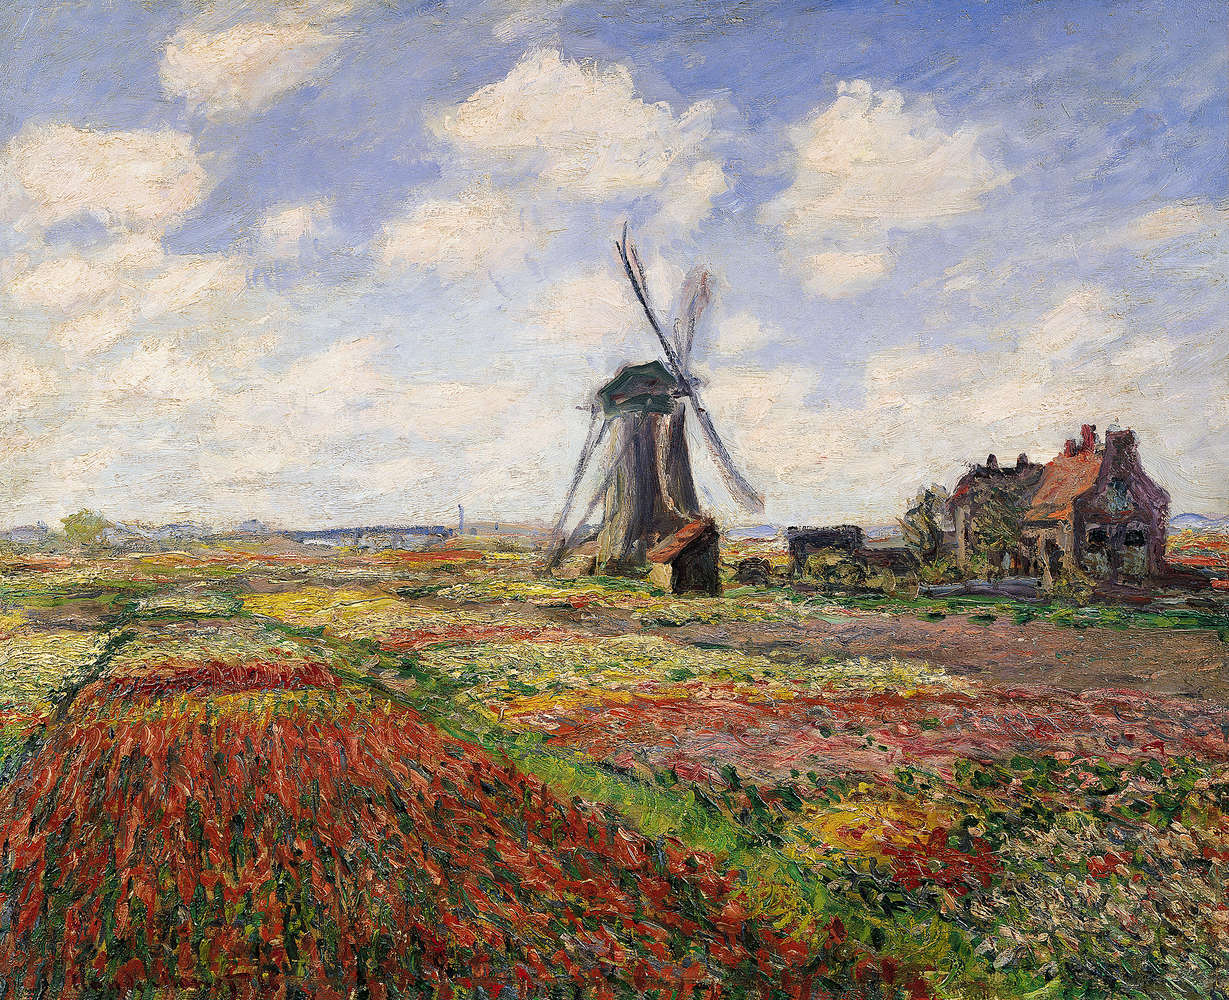             Fototapete "Tulpenfelder mit der Windmühle von Rijnsburg" von Claude Monet
        